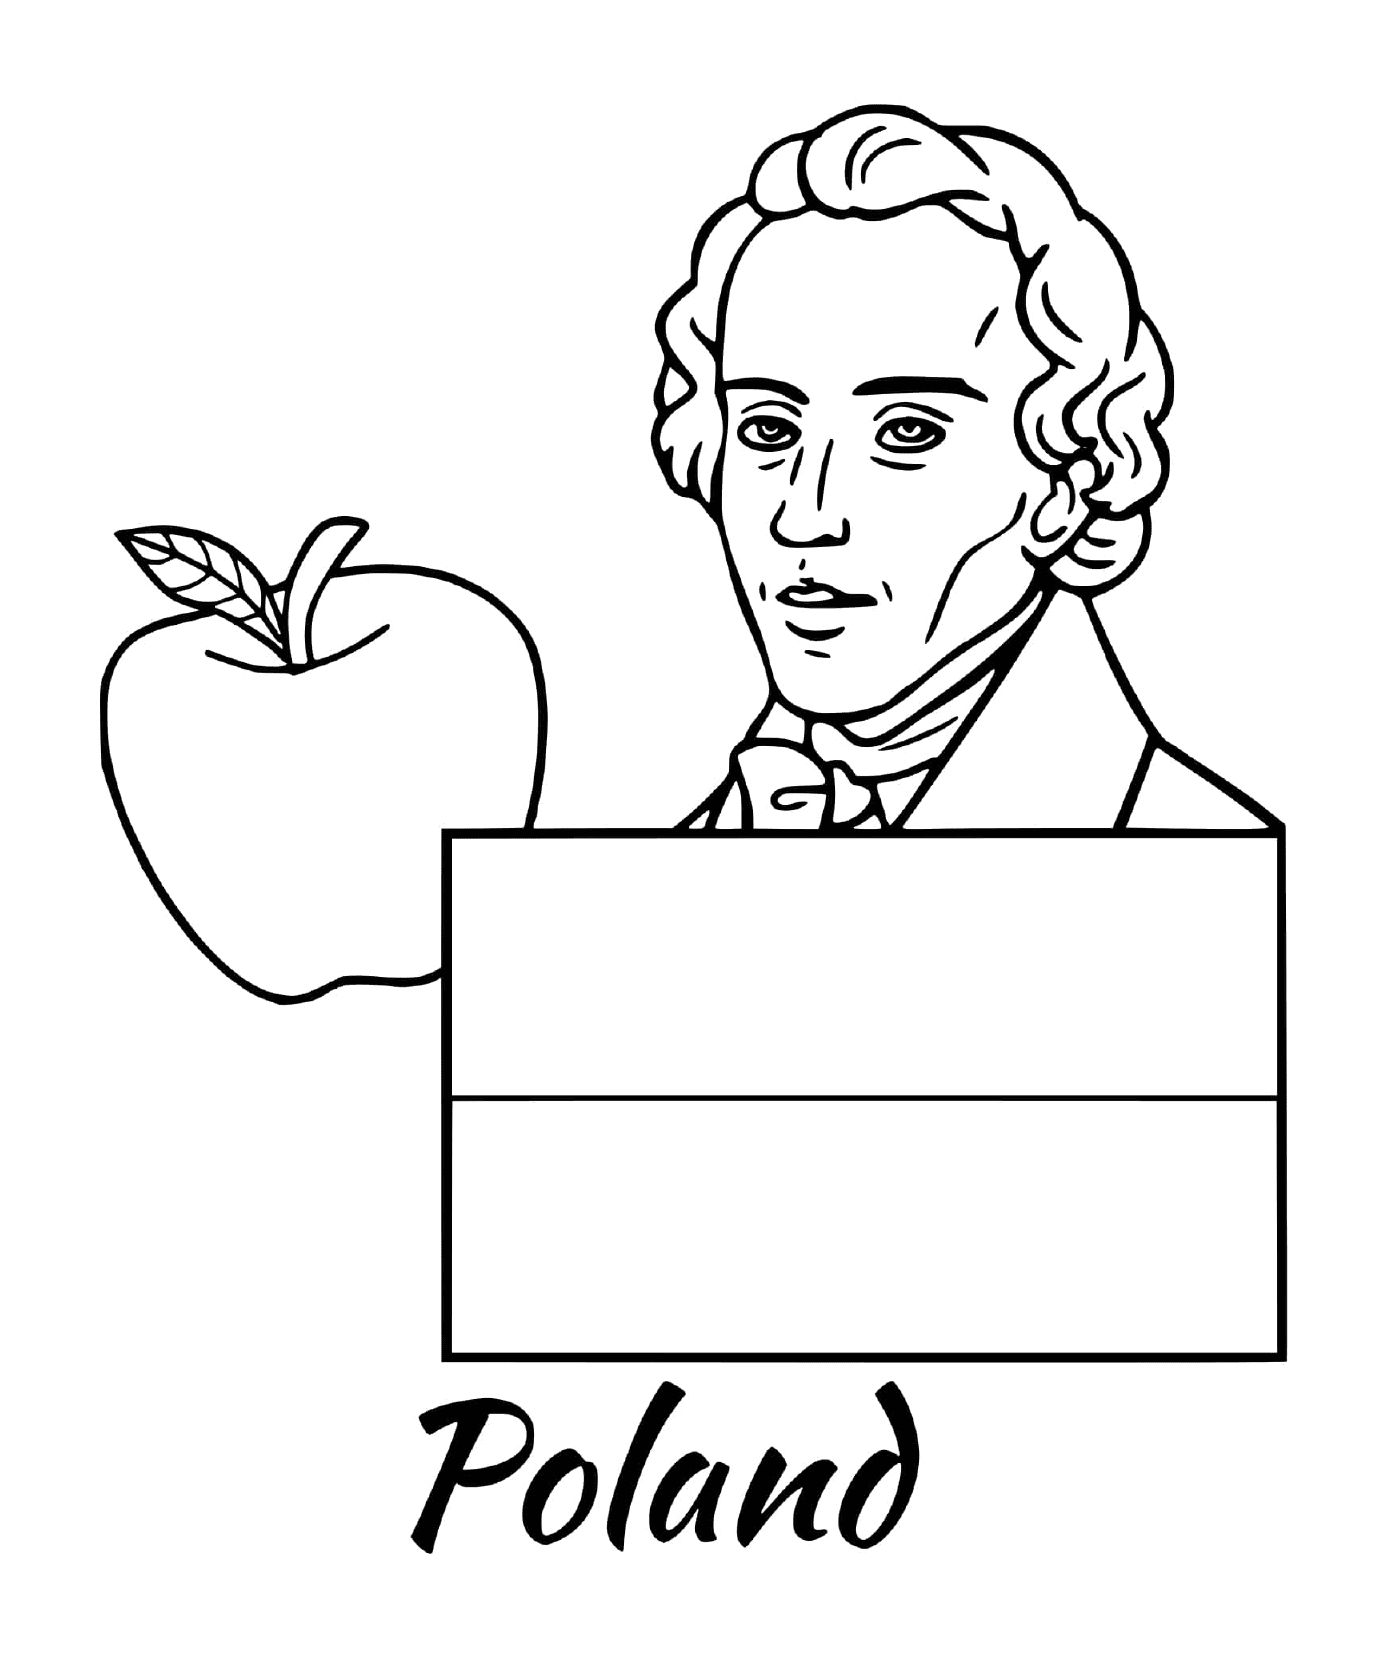  دولة بولندا، 